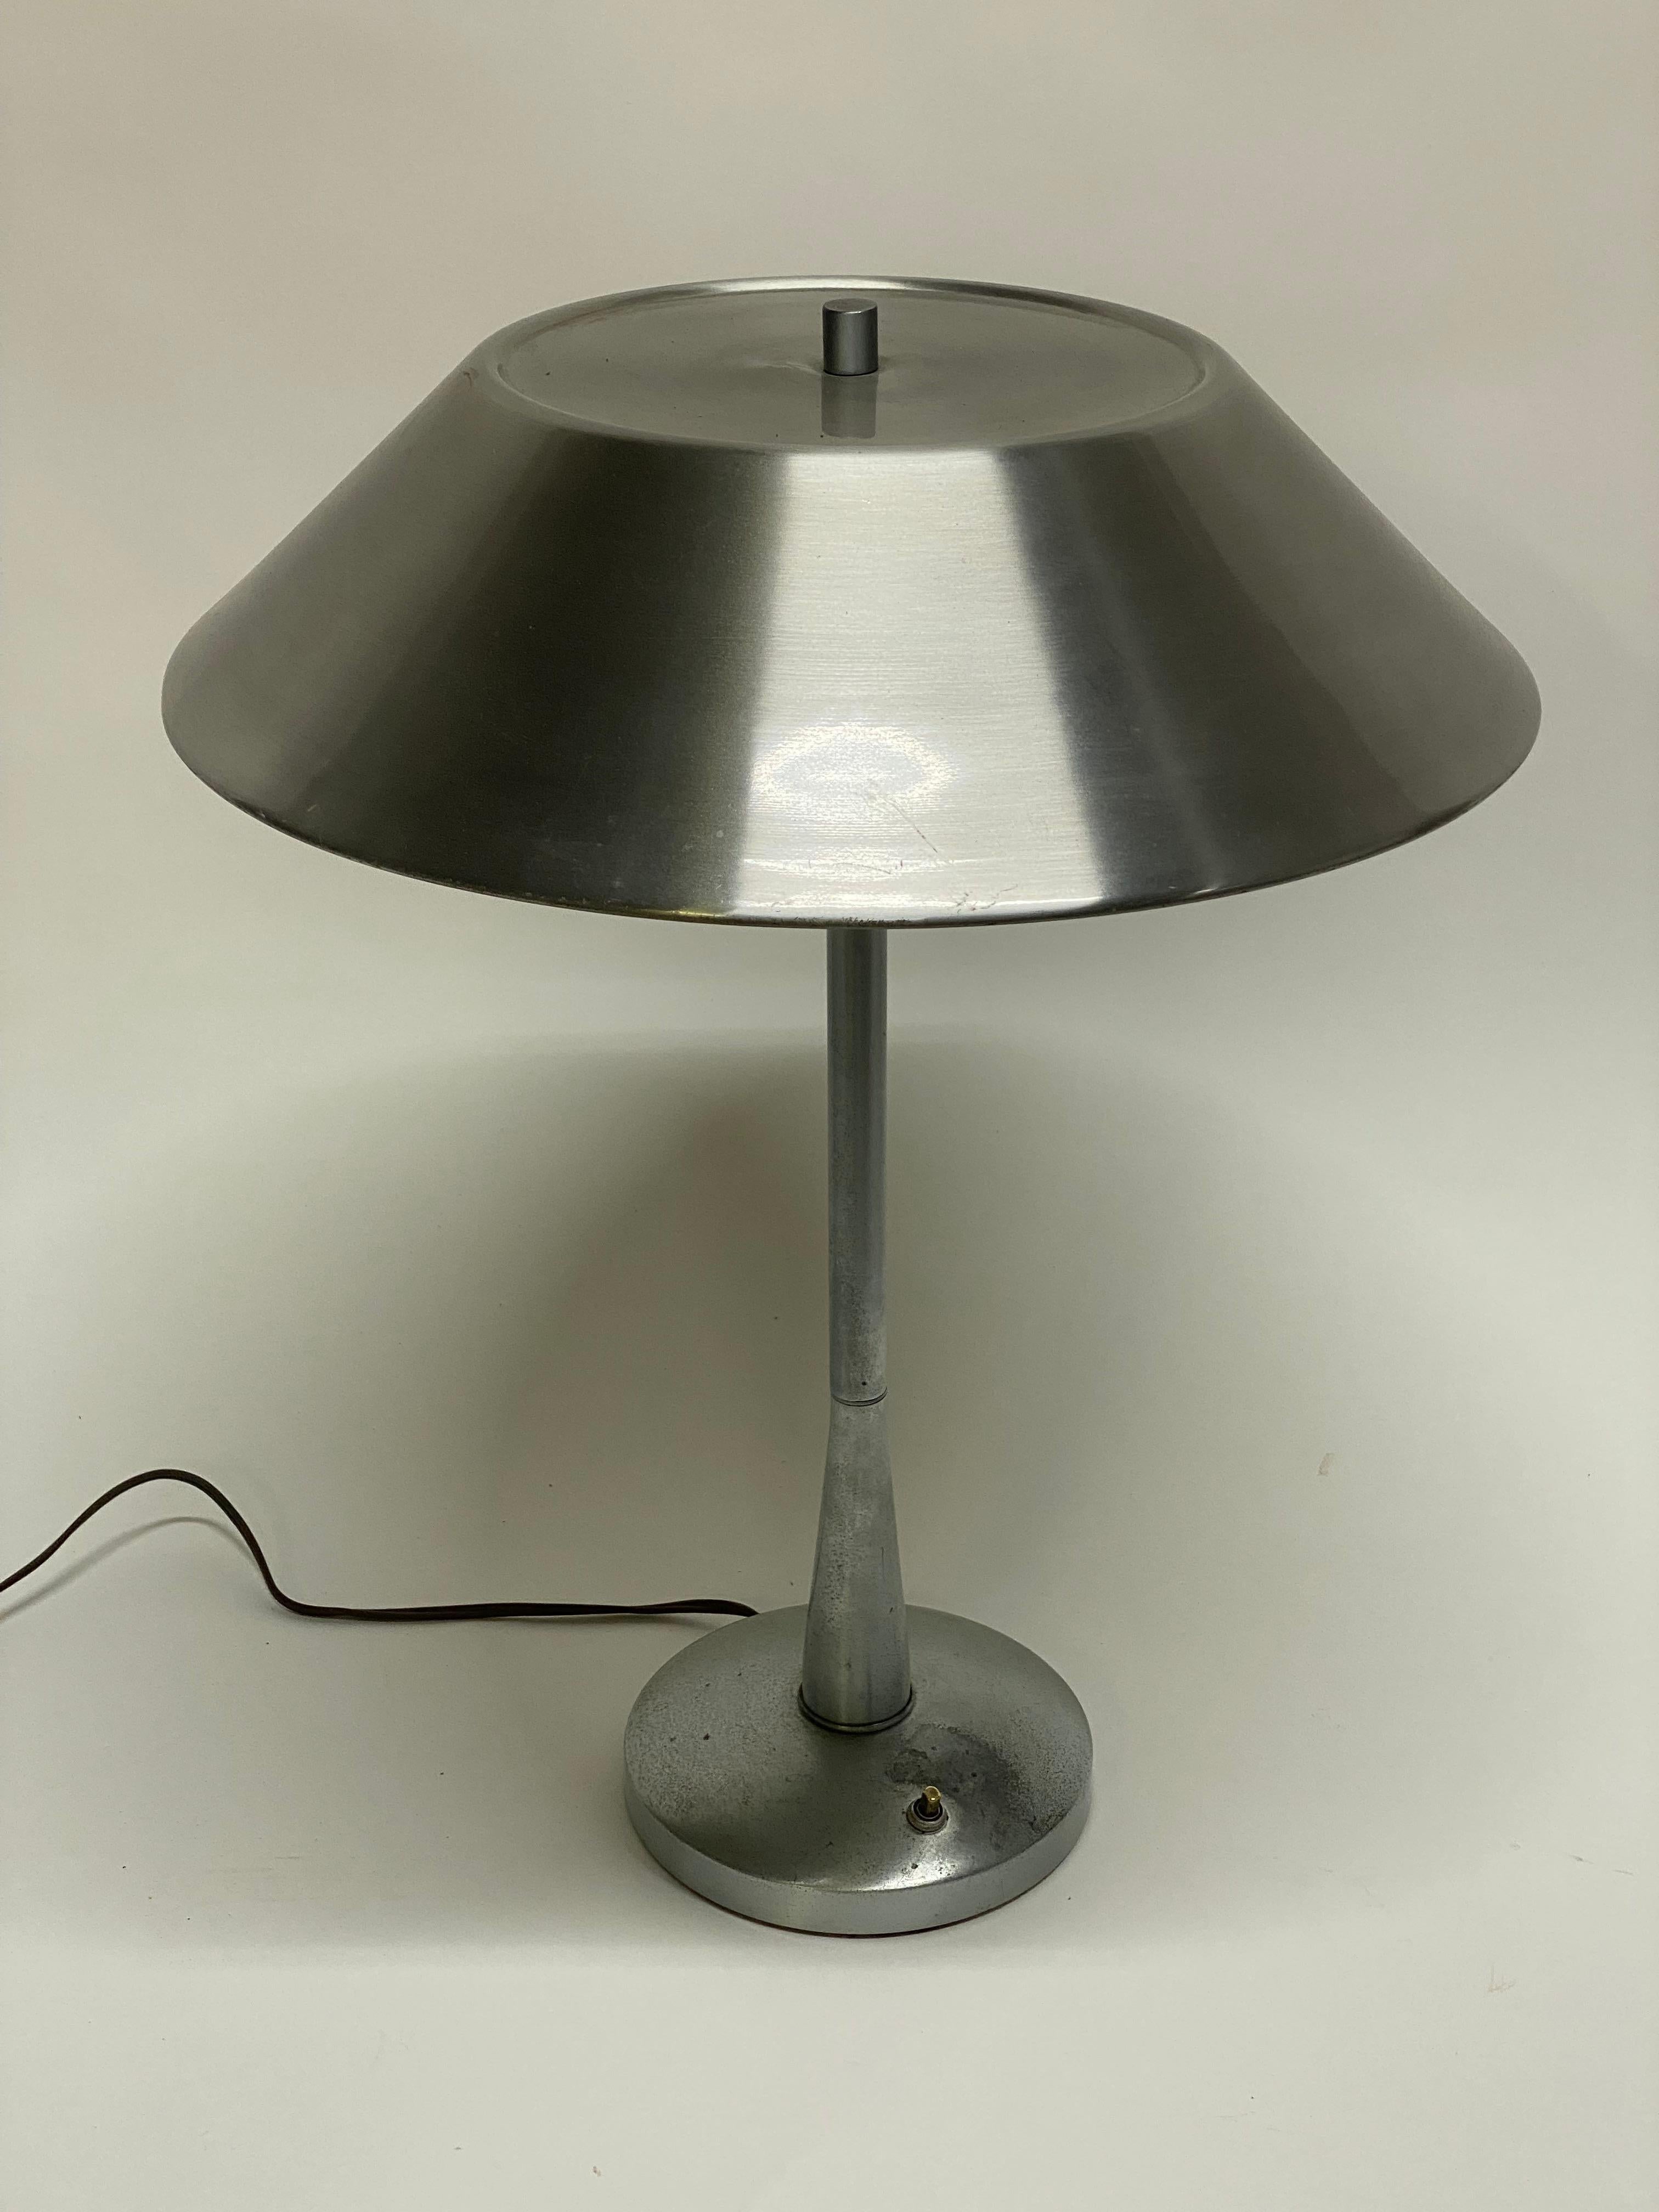 Lampe de table en aluminium Mutual Sunset. Elle est dotée d'une tige effilée, d'un diffuseur de lumière, de doubles douilles et d'un abat-jour en forme de chapeau. Une merveilleuse esthétique de l'âge des machines. Vers 1950. Faible signature sur